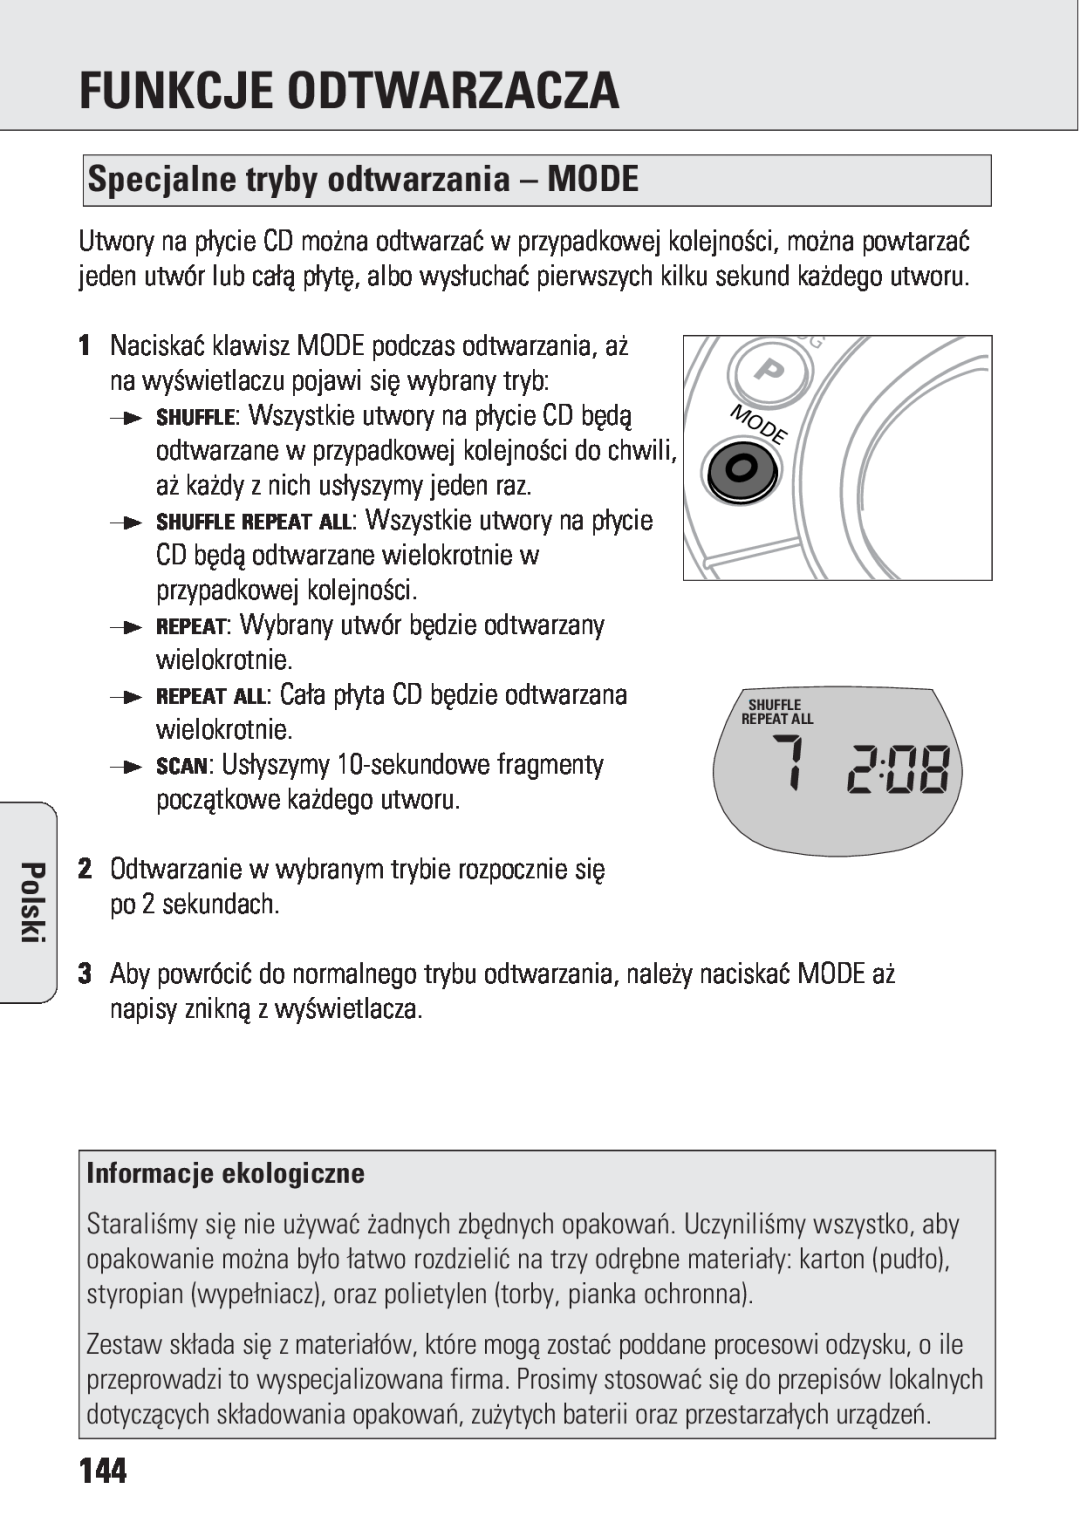 Philips ACT 7583 manual Specjalne tryby odtwarzania – MODE, Informacje ekologiczne, Funkcje Odtwarzacza, Polski 